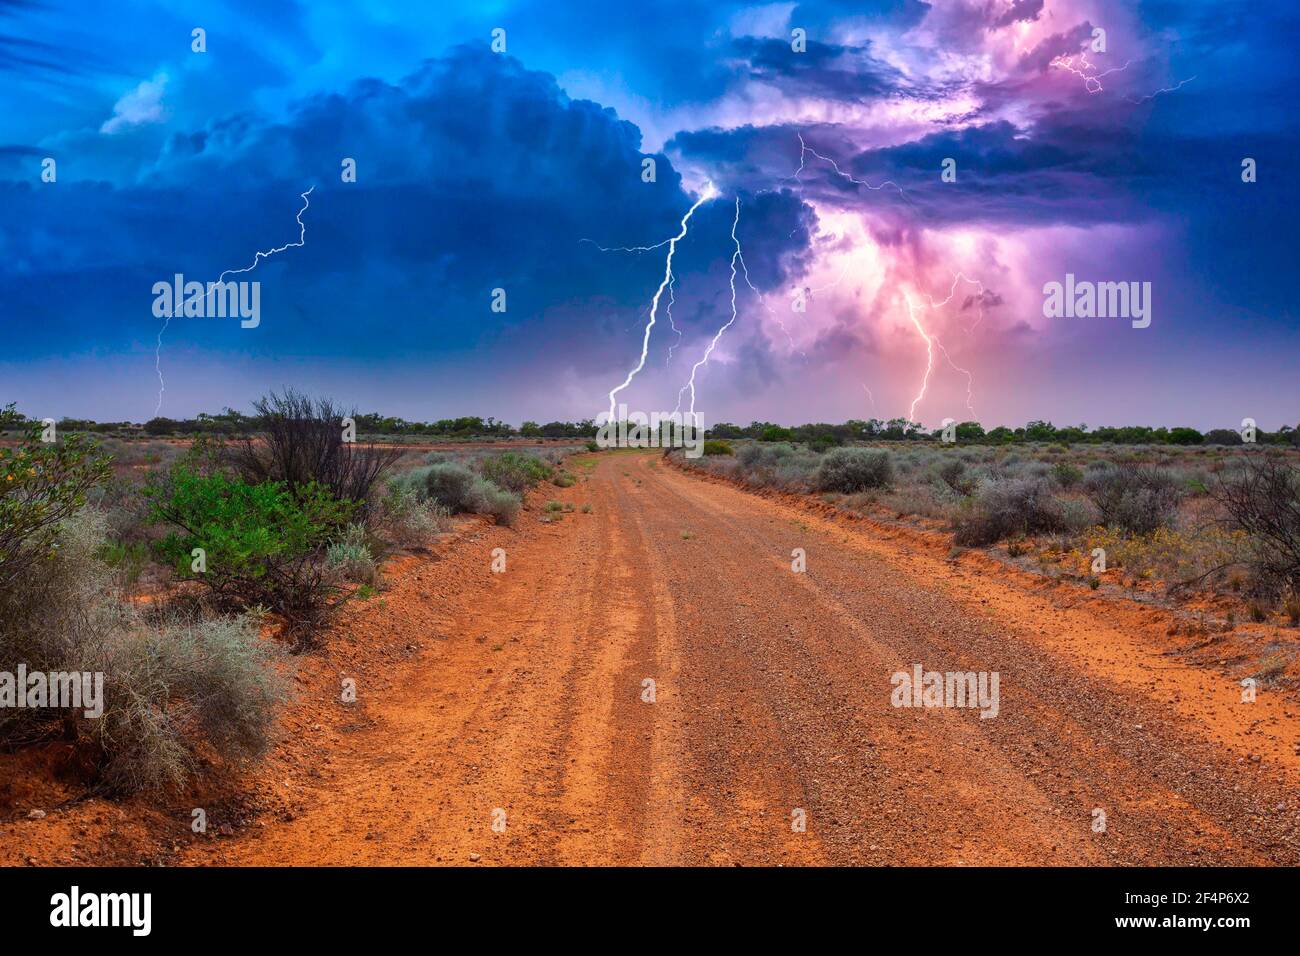 Verlassene australische Outback-Landschaft mit roter Schotterstraße zum Horizont Mit Büschen an Straßenrändern und schwerem Gewitter mit weißem Purpur Blitze Stockfoto